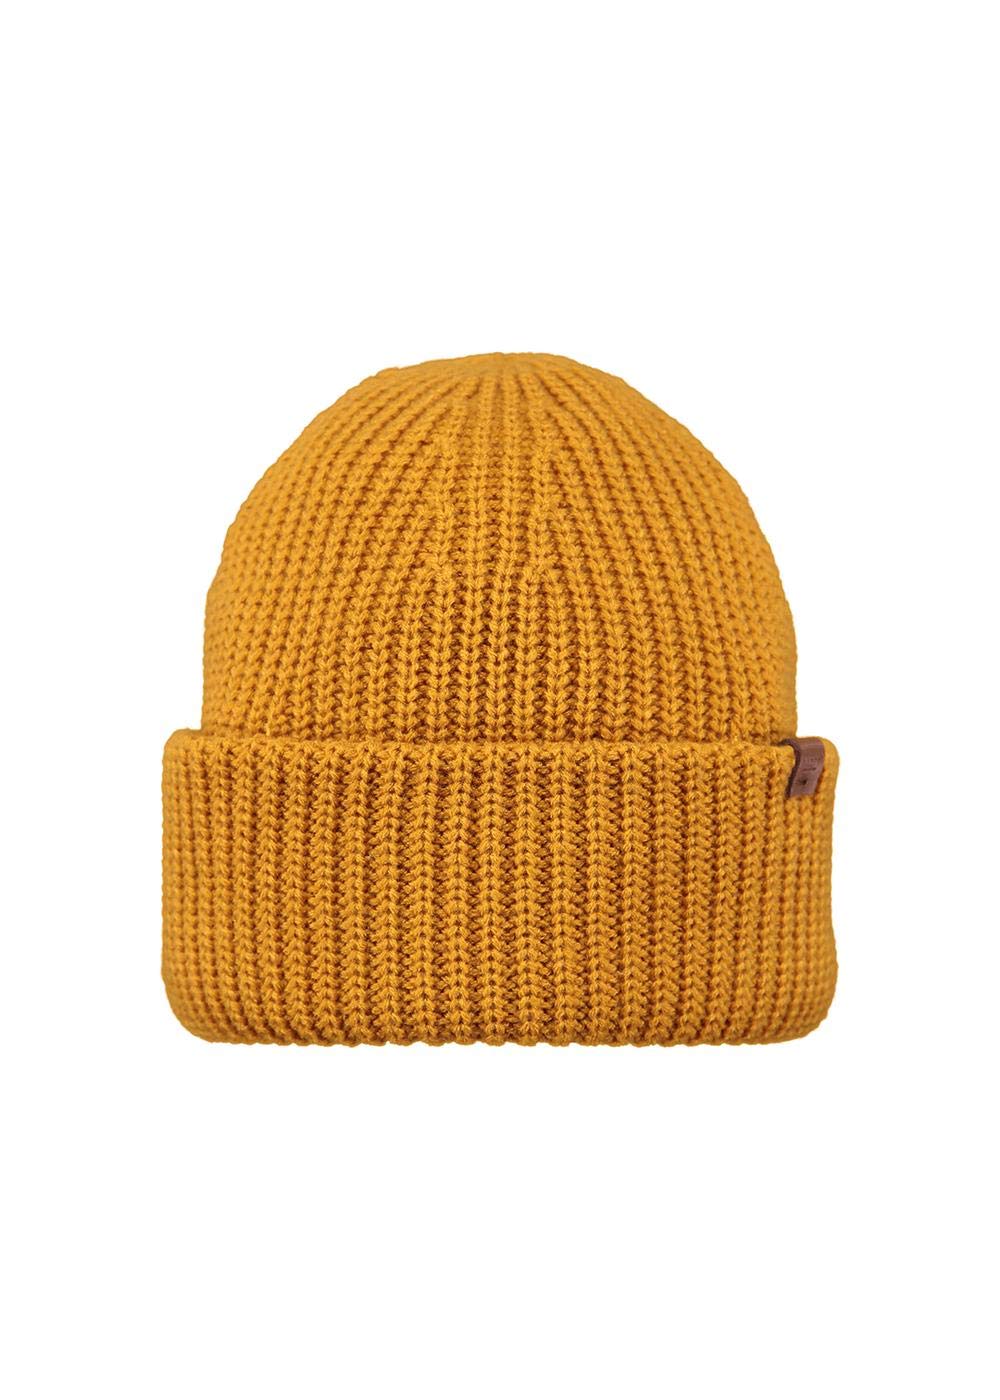 Barts Derval Beanie Gelb - Warme dehnbare Mütze, Größe One Size - Farbe Ochre